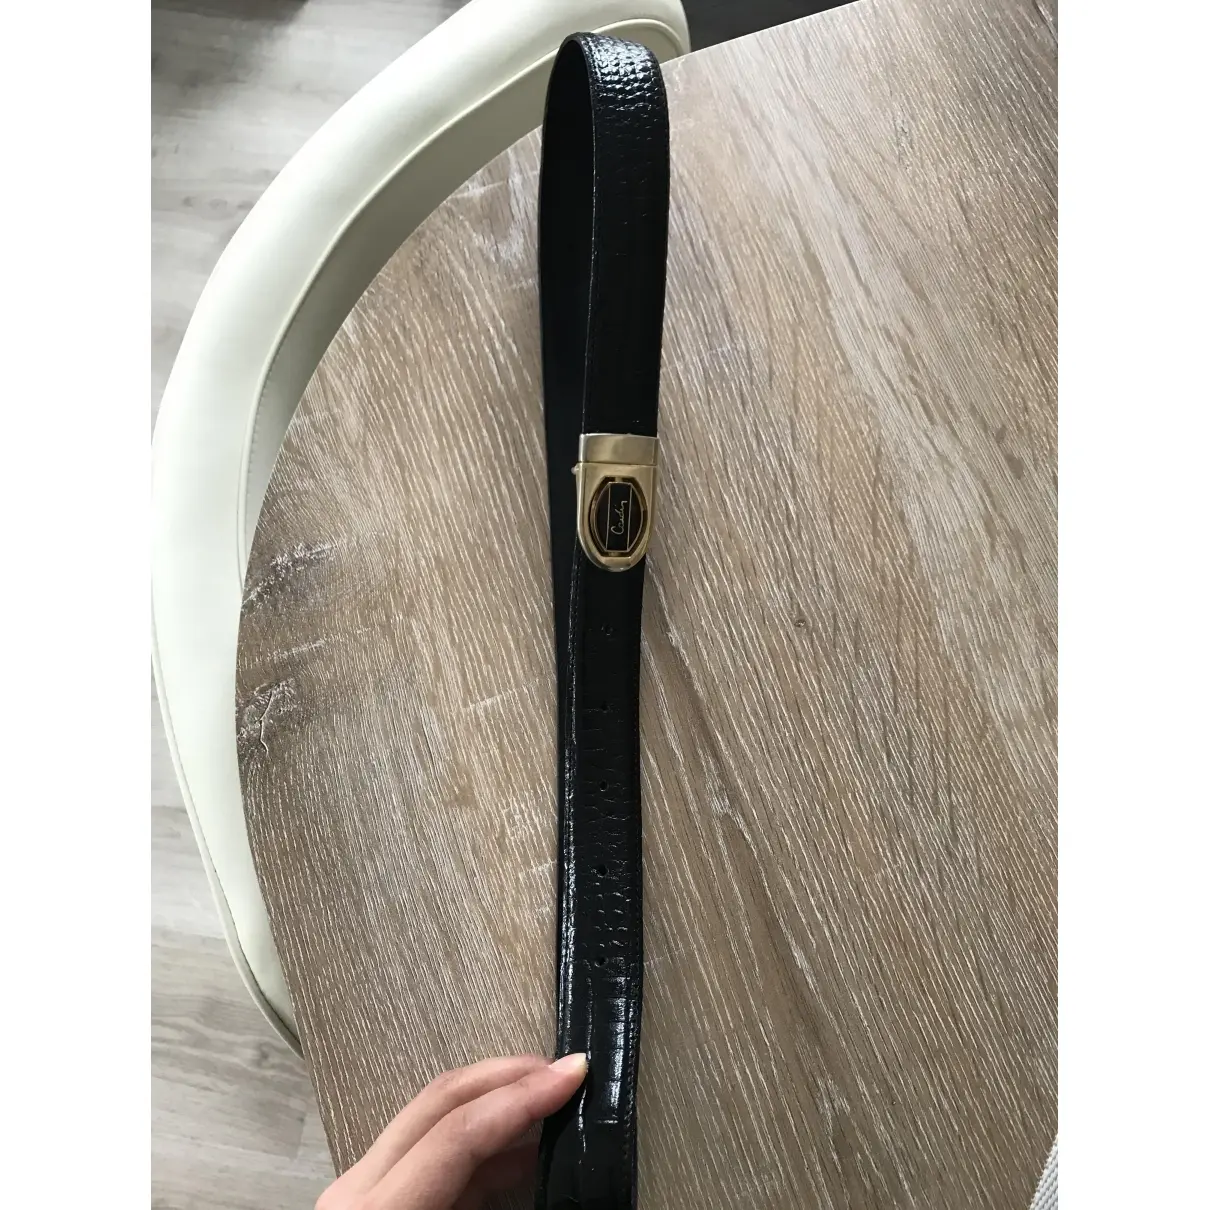 Pierre Cardin Leather belt for sale - Vintage